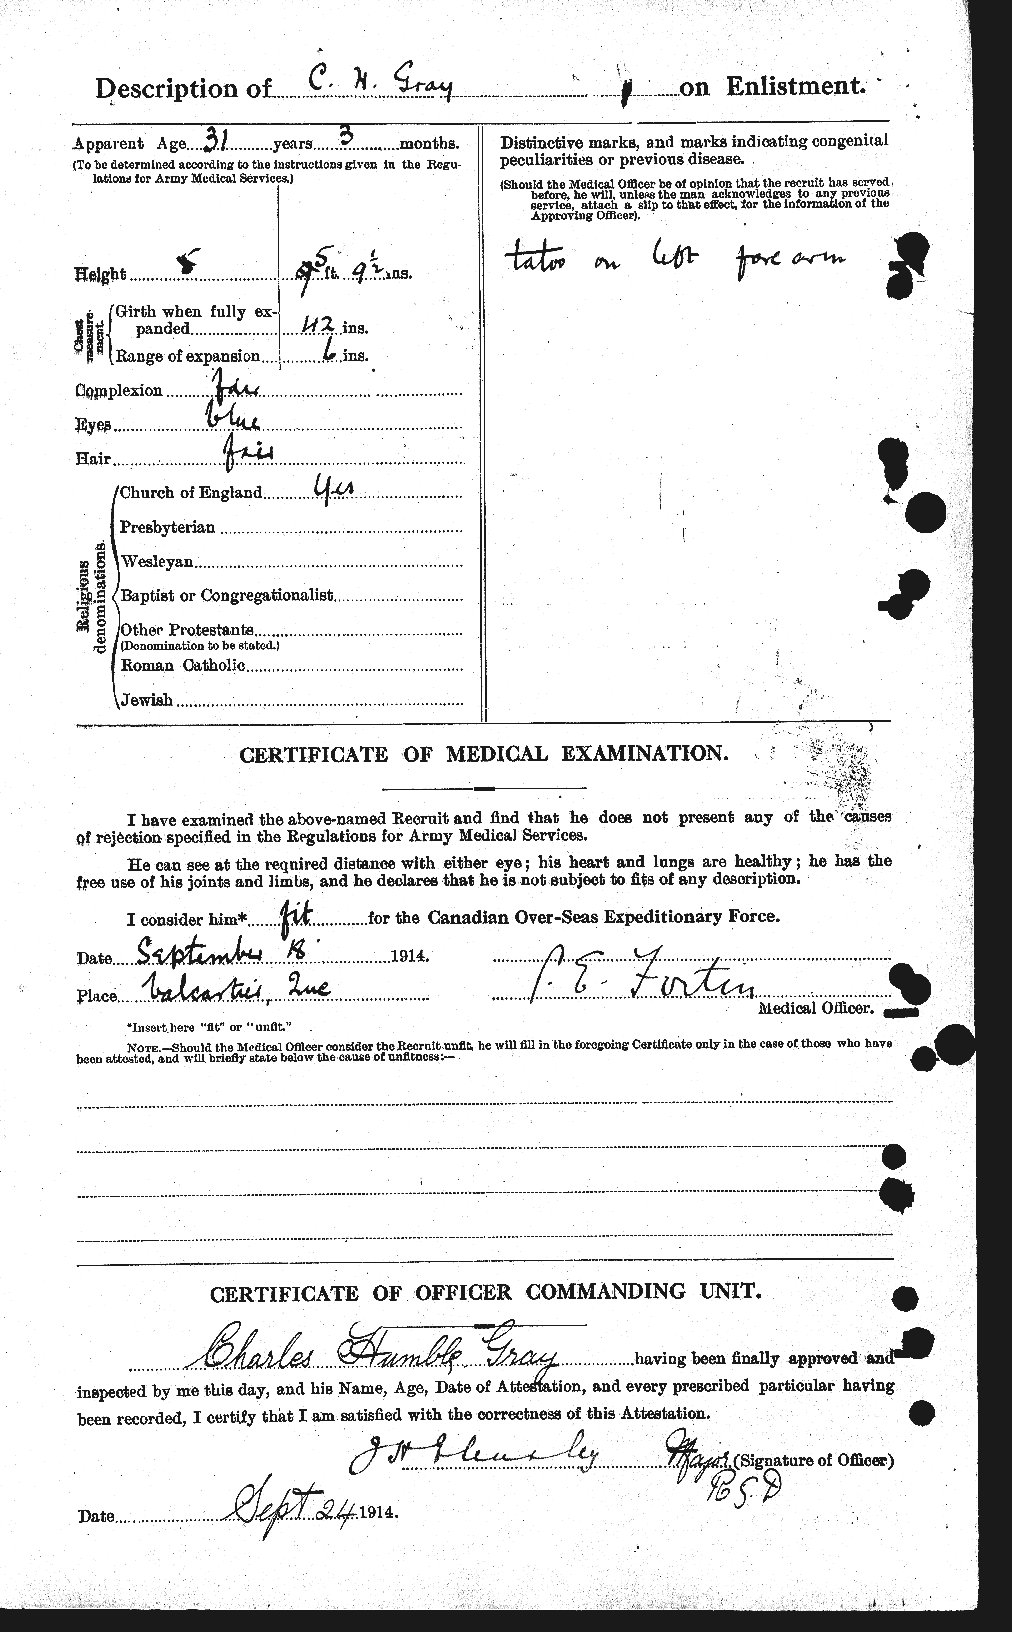 Dossiers du Personnel de la Première Guerre mondiale - CEC 361440b